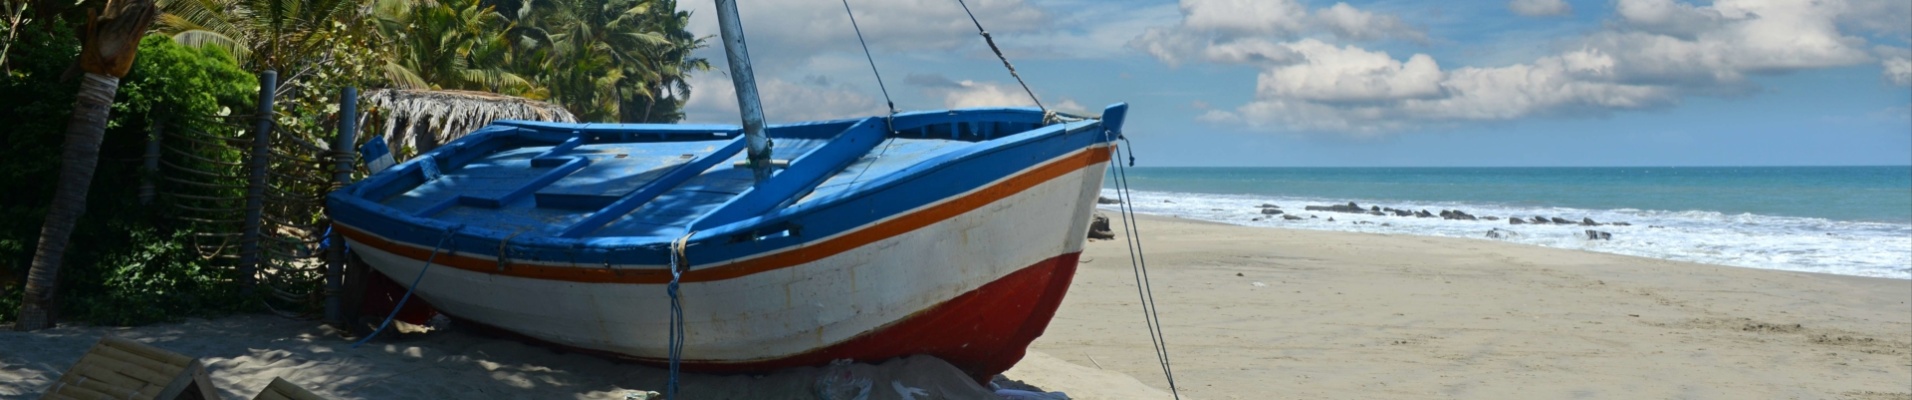 Vue sur un bateau, bord de mer, plage,Pérou